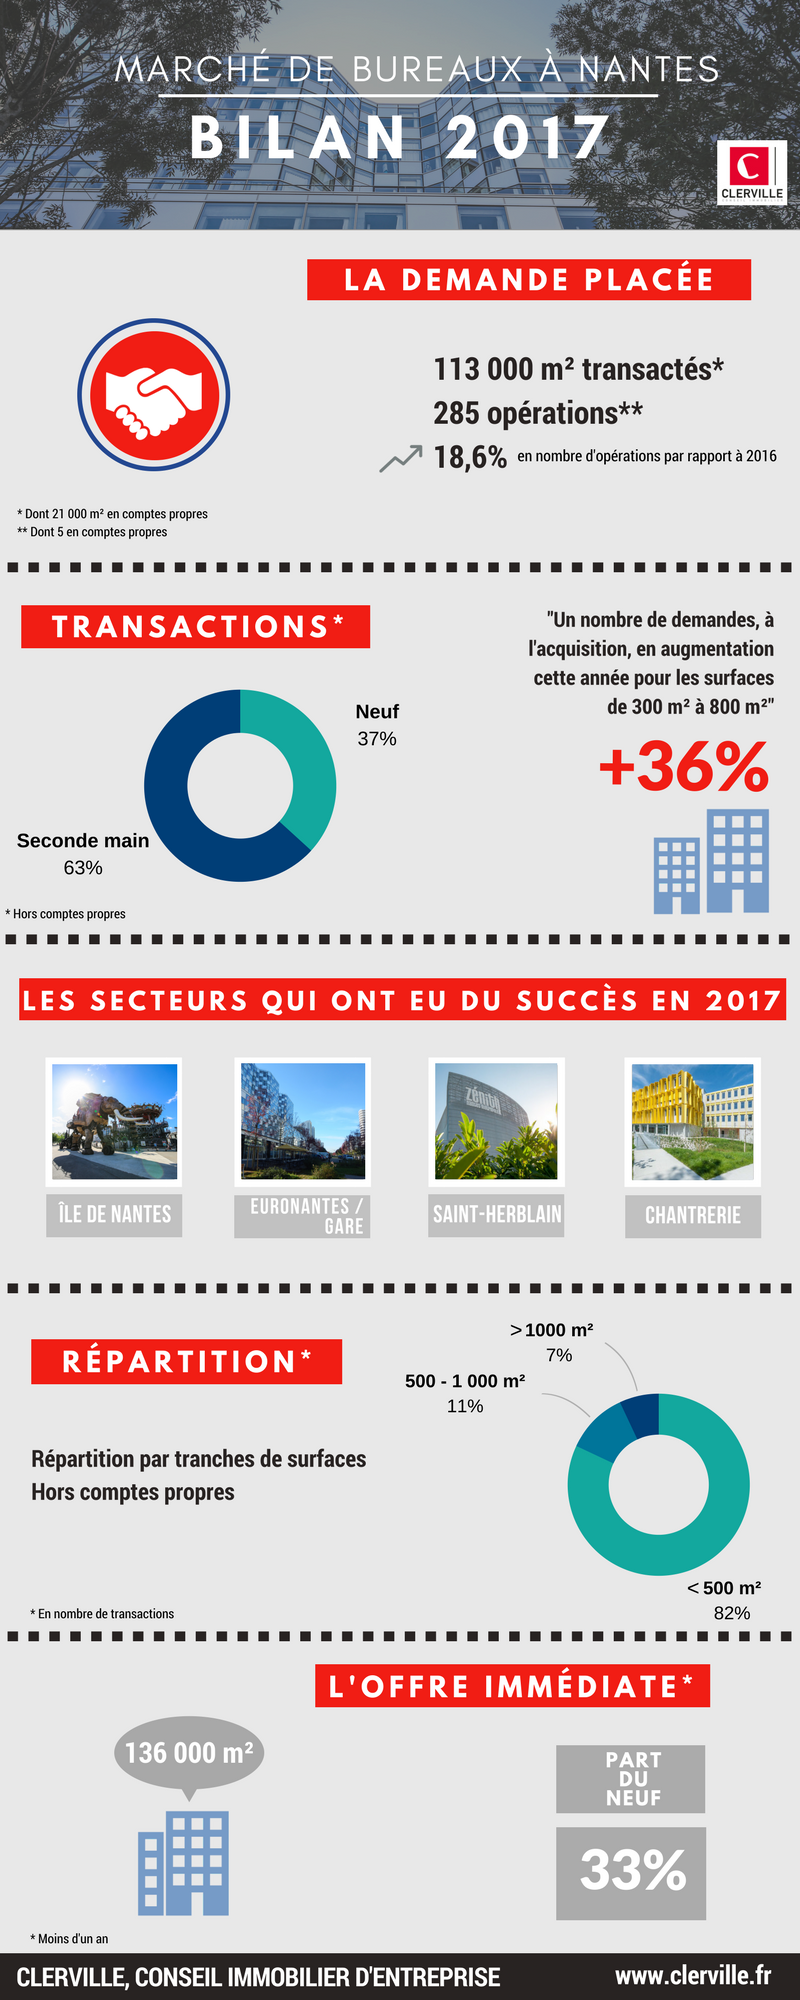 Immobilier de bureaux à Nantes 2017